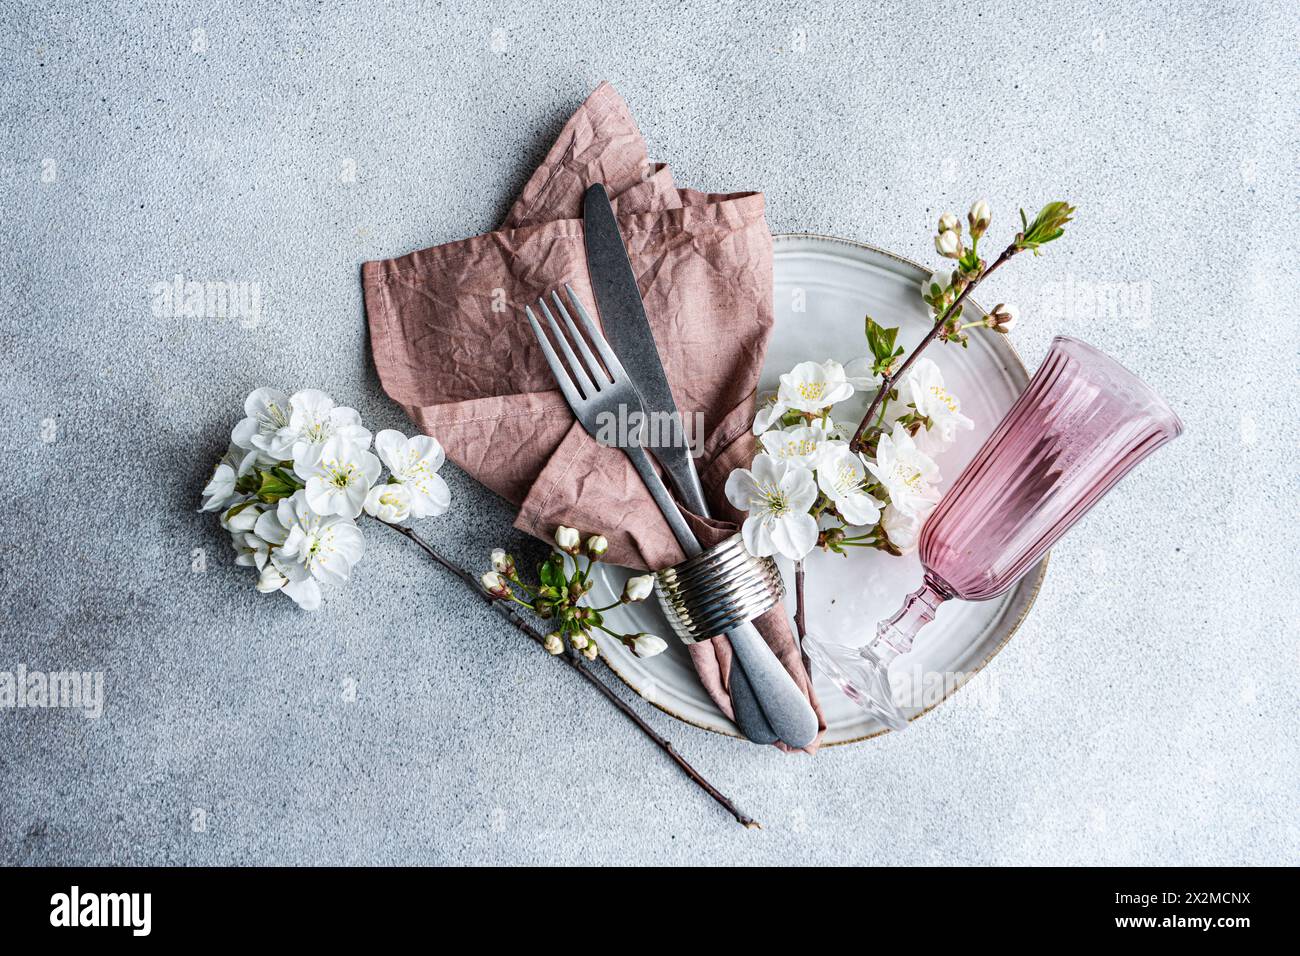 Décor de table élégant inspiré de la fleur de cerisier aux couleurs pastel, serviette texturée, argenterie et verre rose Banque D'Images